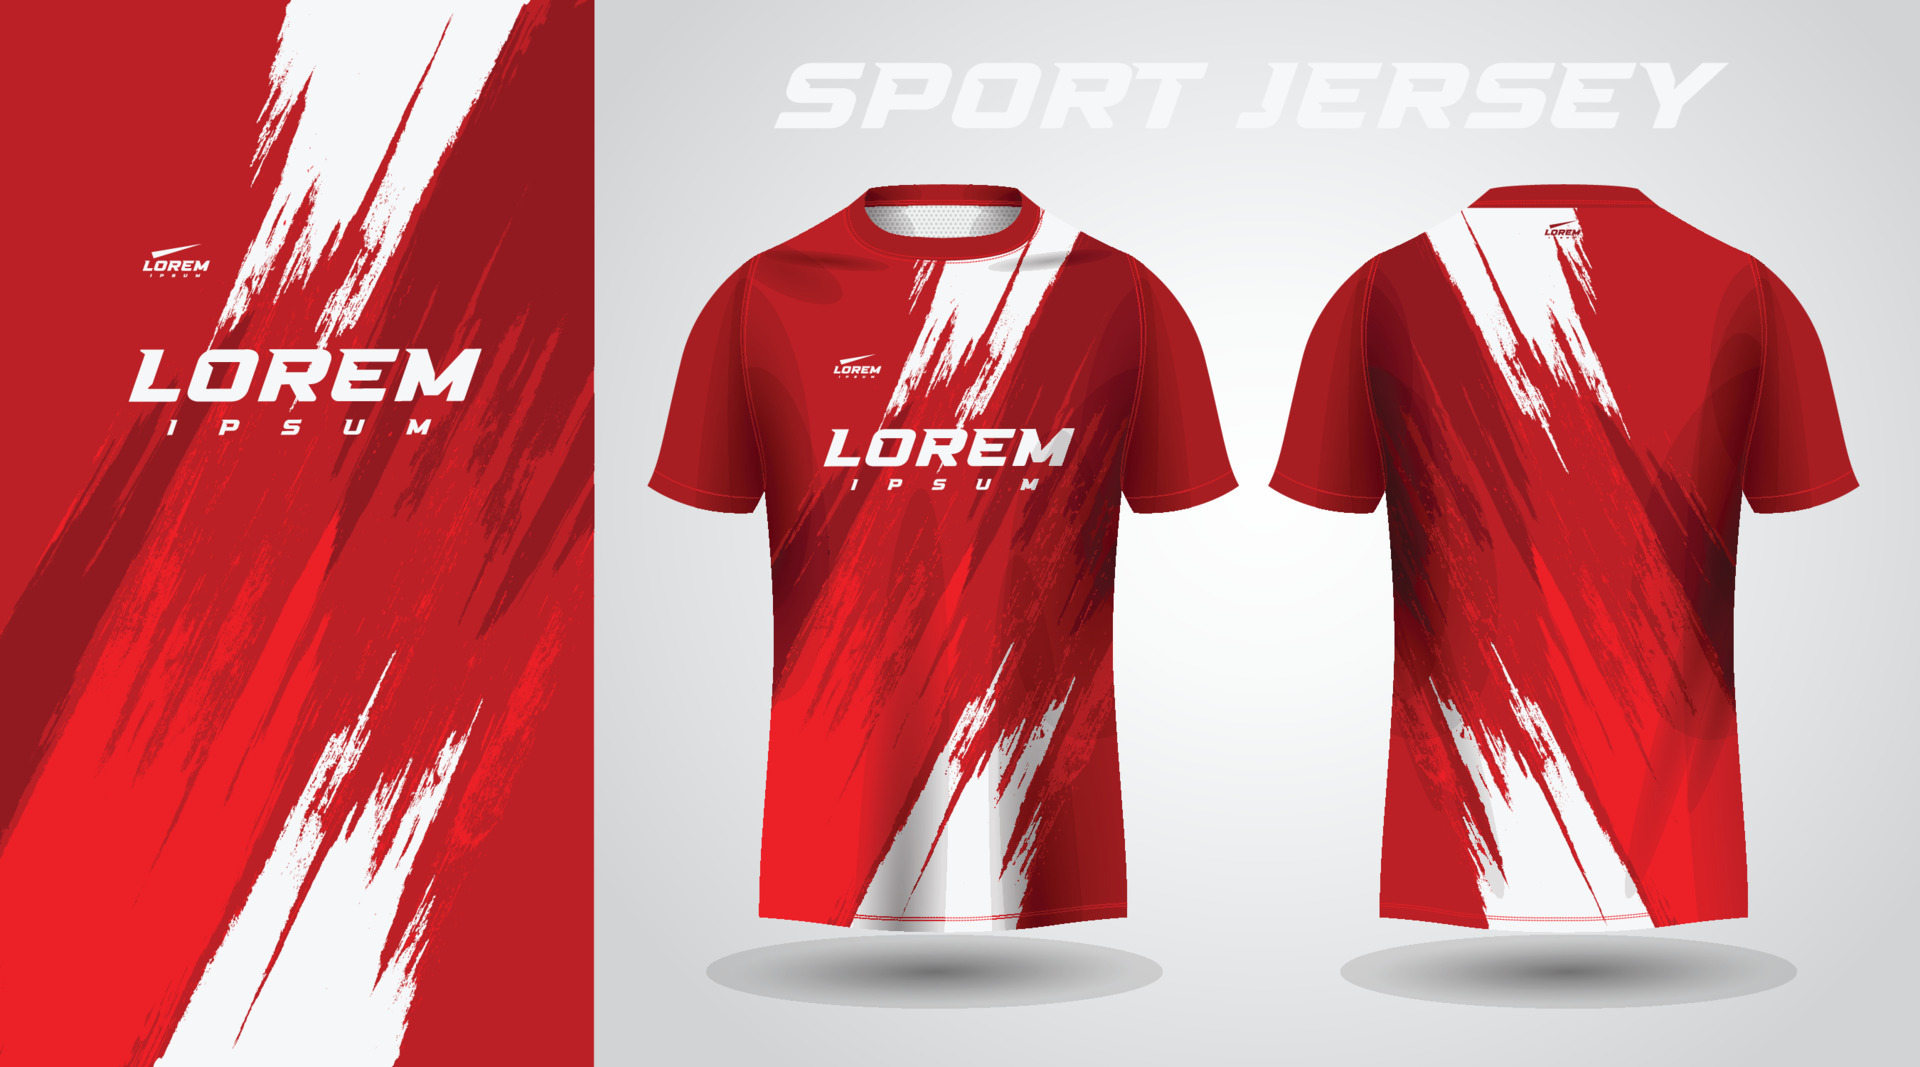 red t-shirt sport jersey design 7735902 Vector Art at Vecteezy